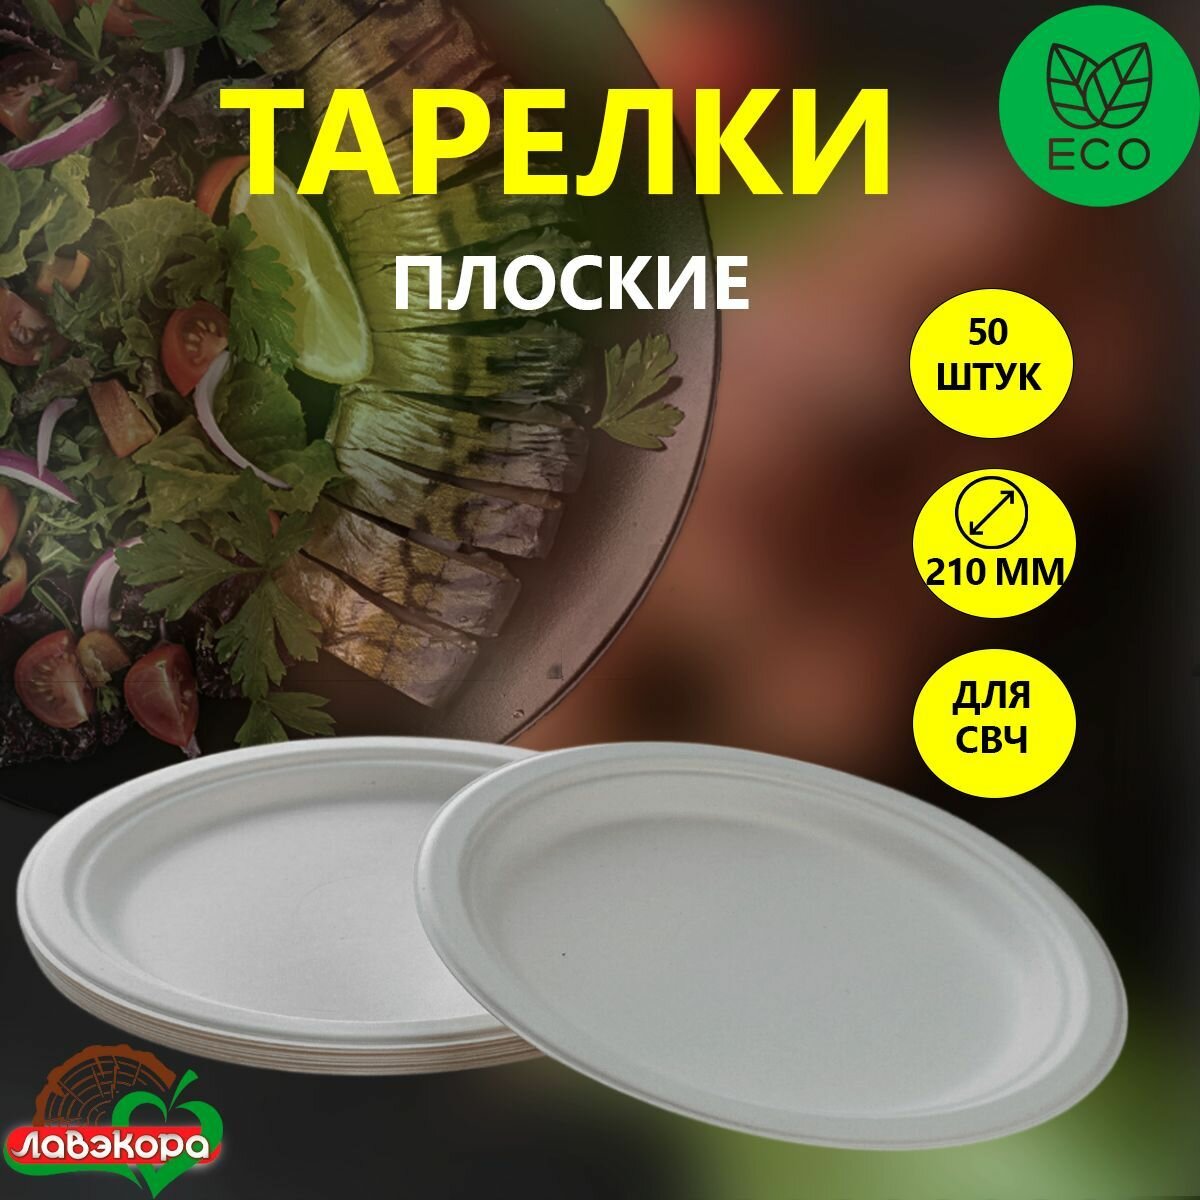 Одноразовые тарелки плоские Лавэкора для вторых блюд, комплект 50 шт, биоразлагаемые ЭКО из древесной целлюлозы для холодных и горячих блюд.